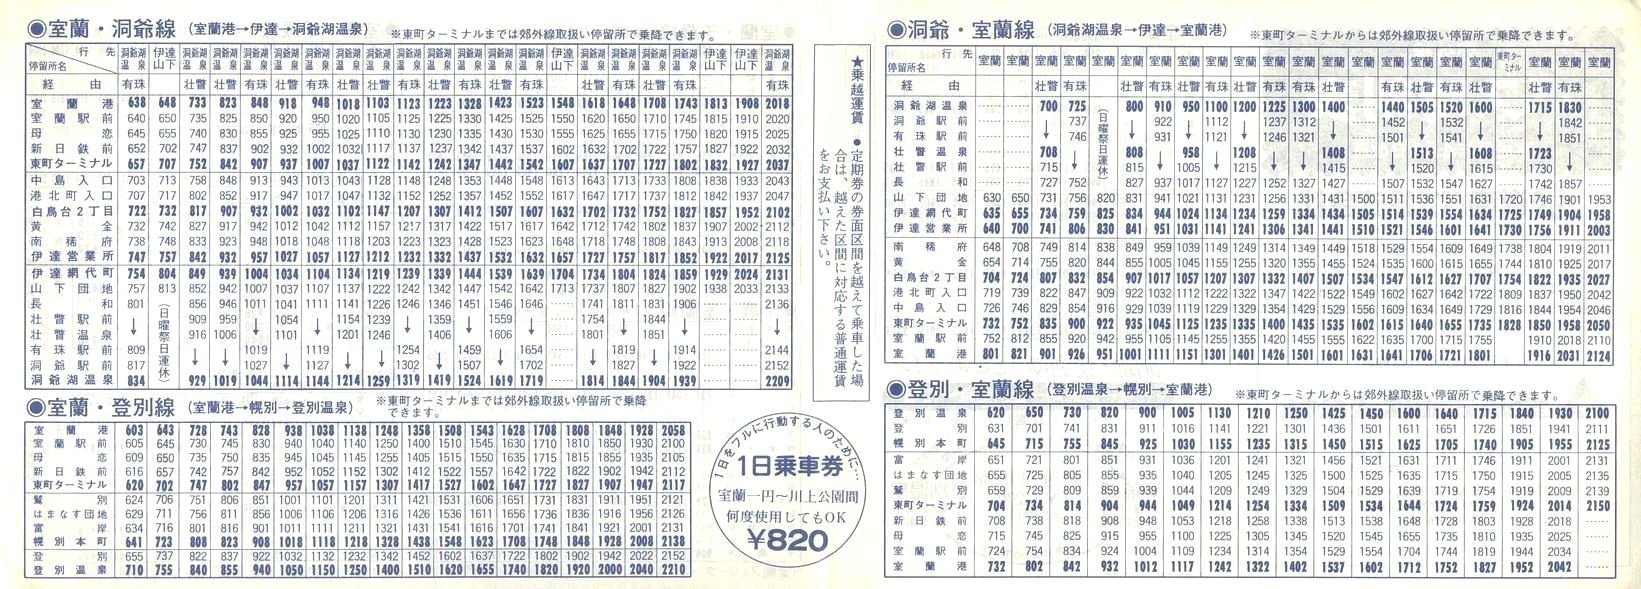 1989-04-01改正_道南バス_室蘭版郊外線時刻表裏面